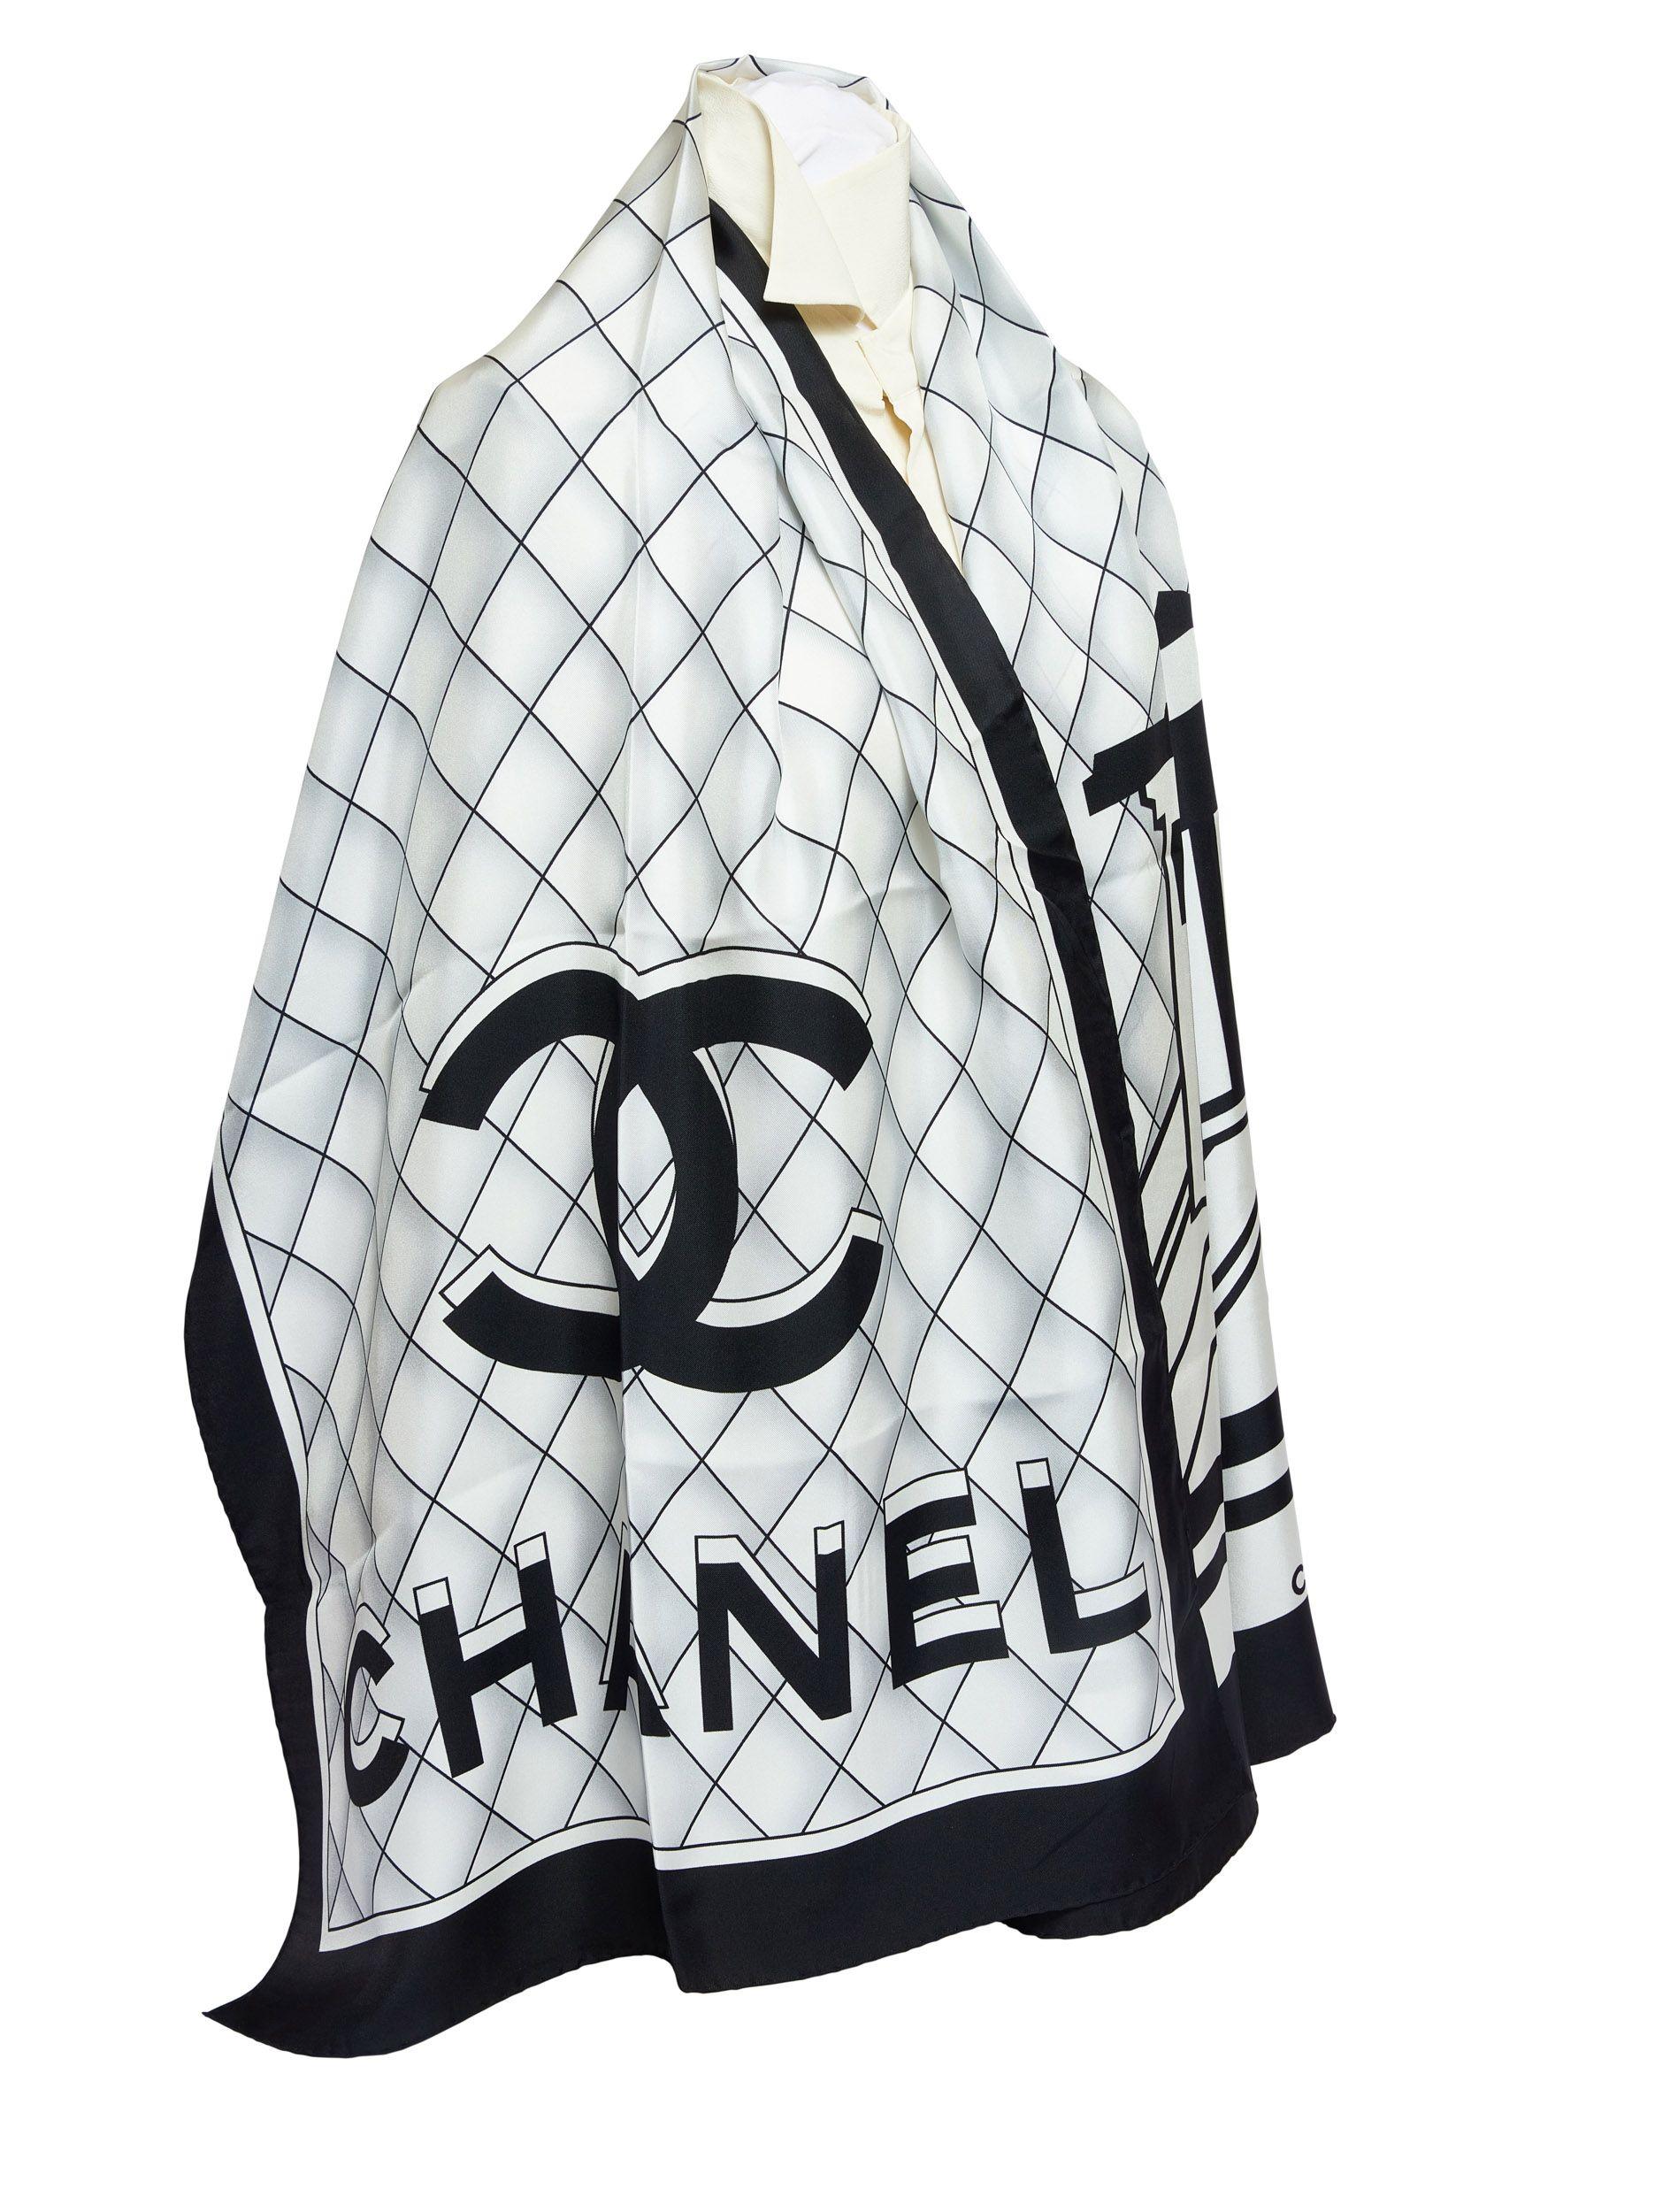 Echarpe en soie noire et blanche de Chanel. Sur l'écharpe figurent les lettres Chanel imprimées en 3D. La garniture est noire et a des bords roulés. Il est tout neuf.
